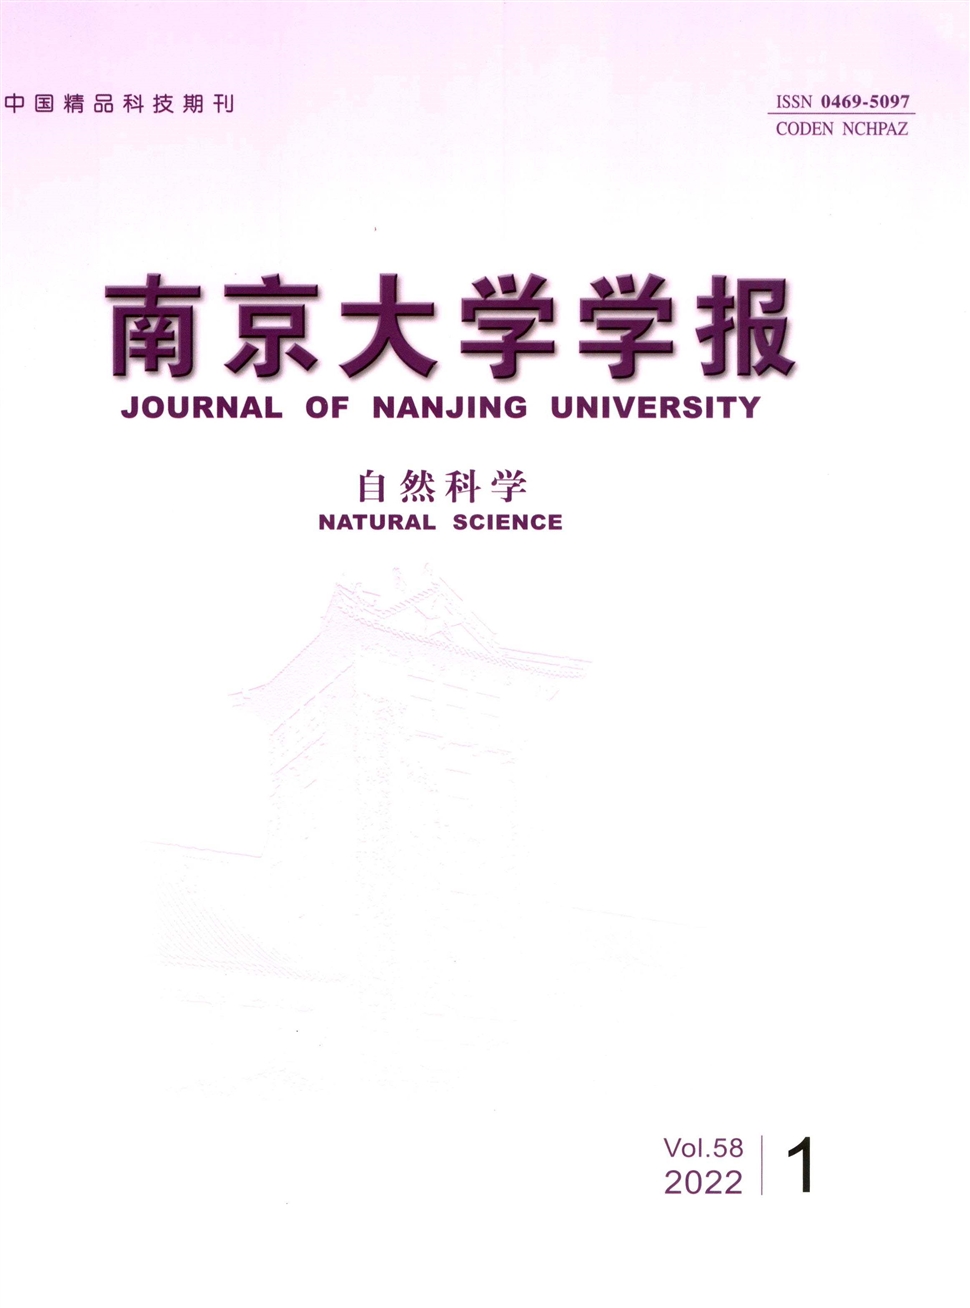 南京大学学报(数学半年刊)